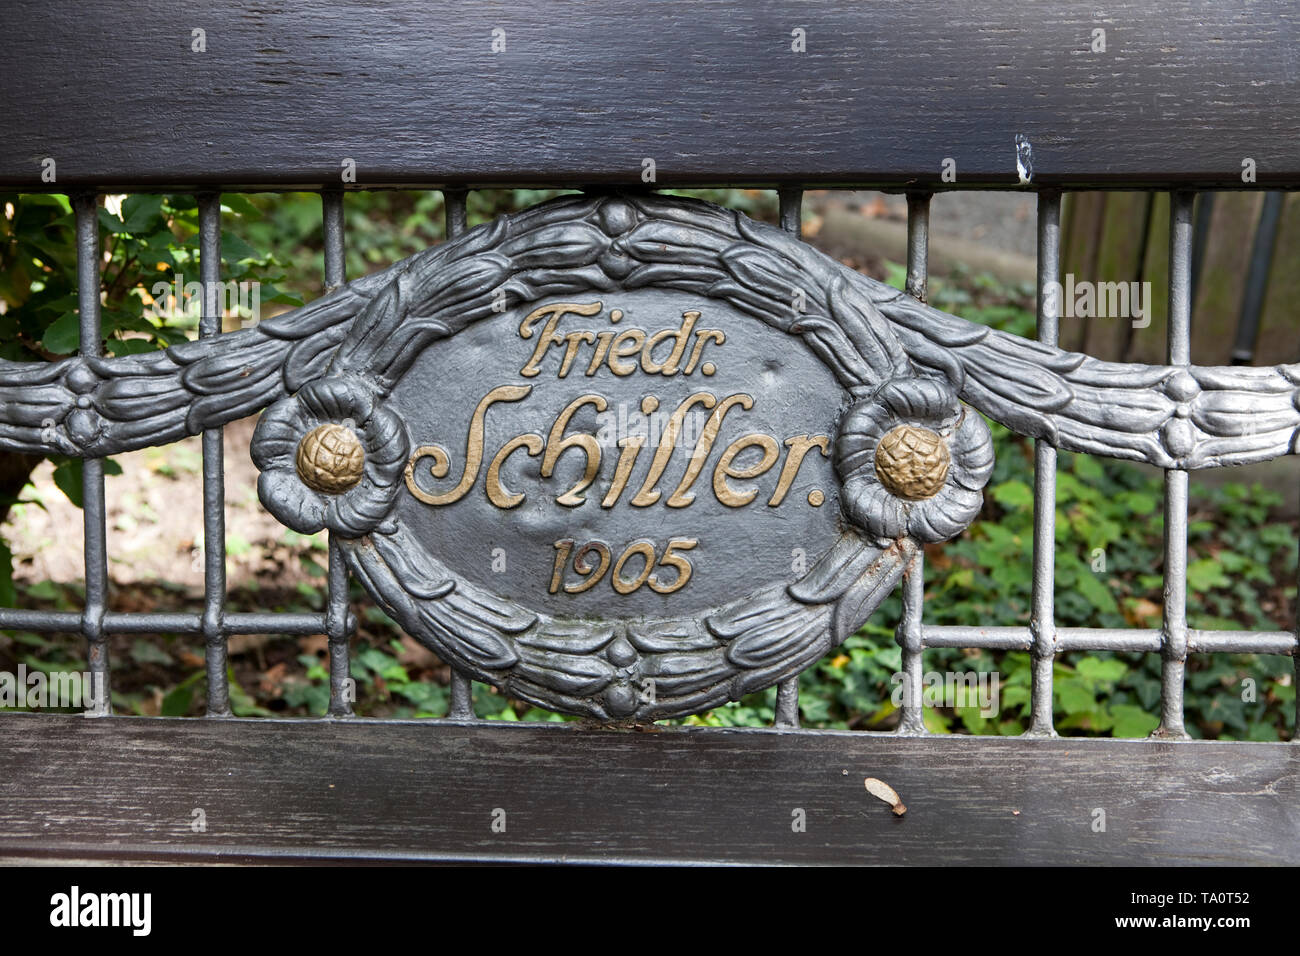 Friedrich Schiller, 1905, Widmung auf einer Bank neben dem Grab von Robert und Clara Schumann, Alter Friedhof, Bonn, Nordrhein-Westfalen, Deutschland, Eu Stockfoto